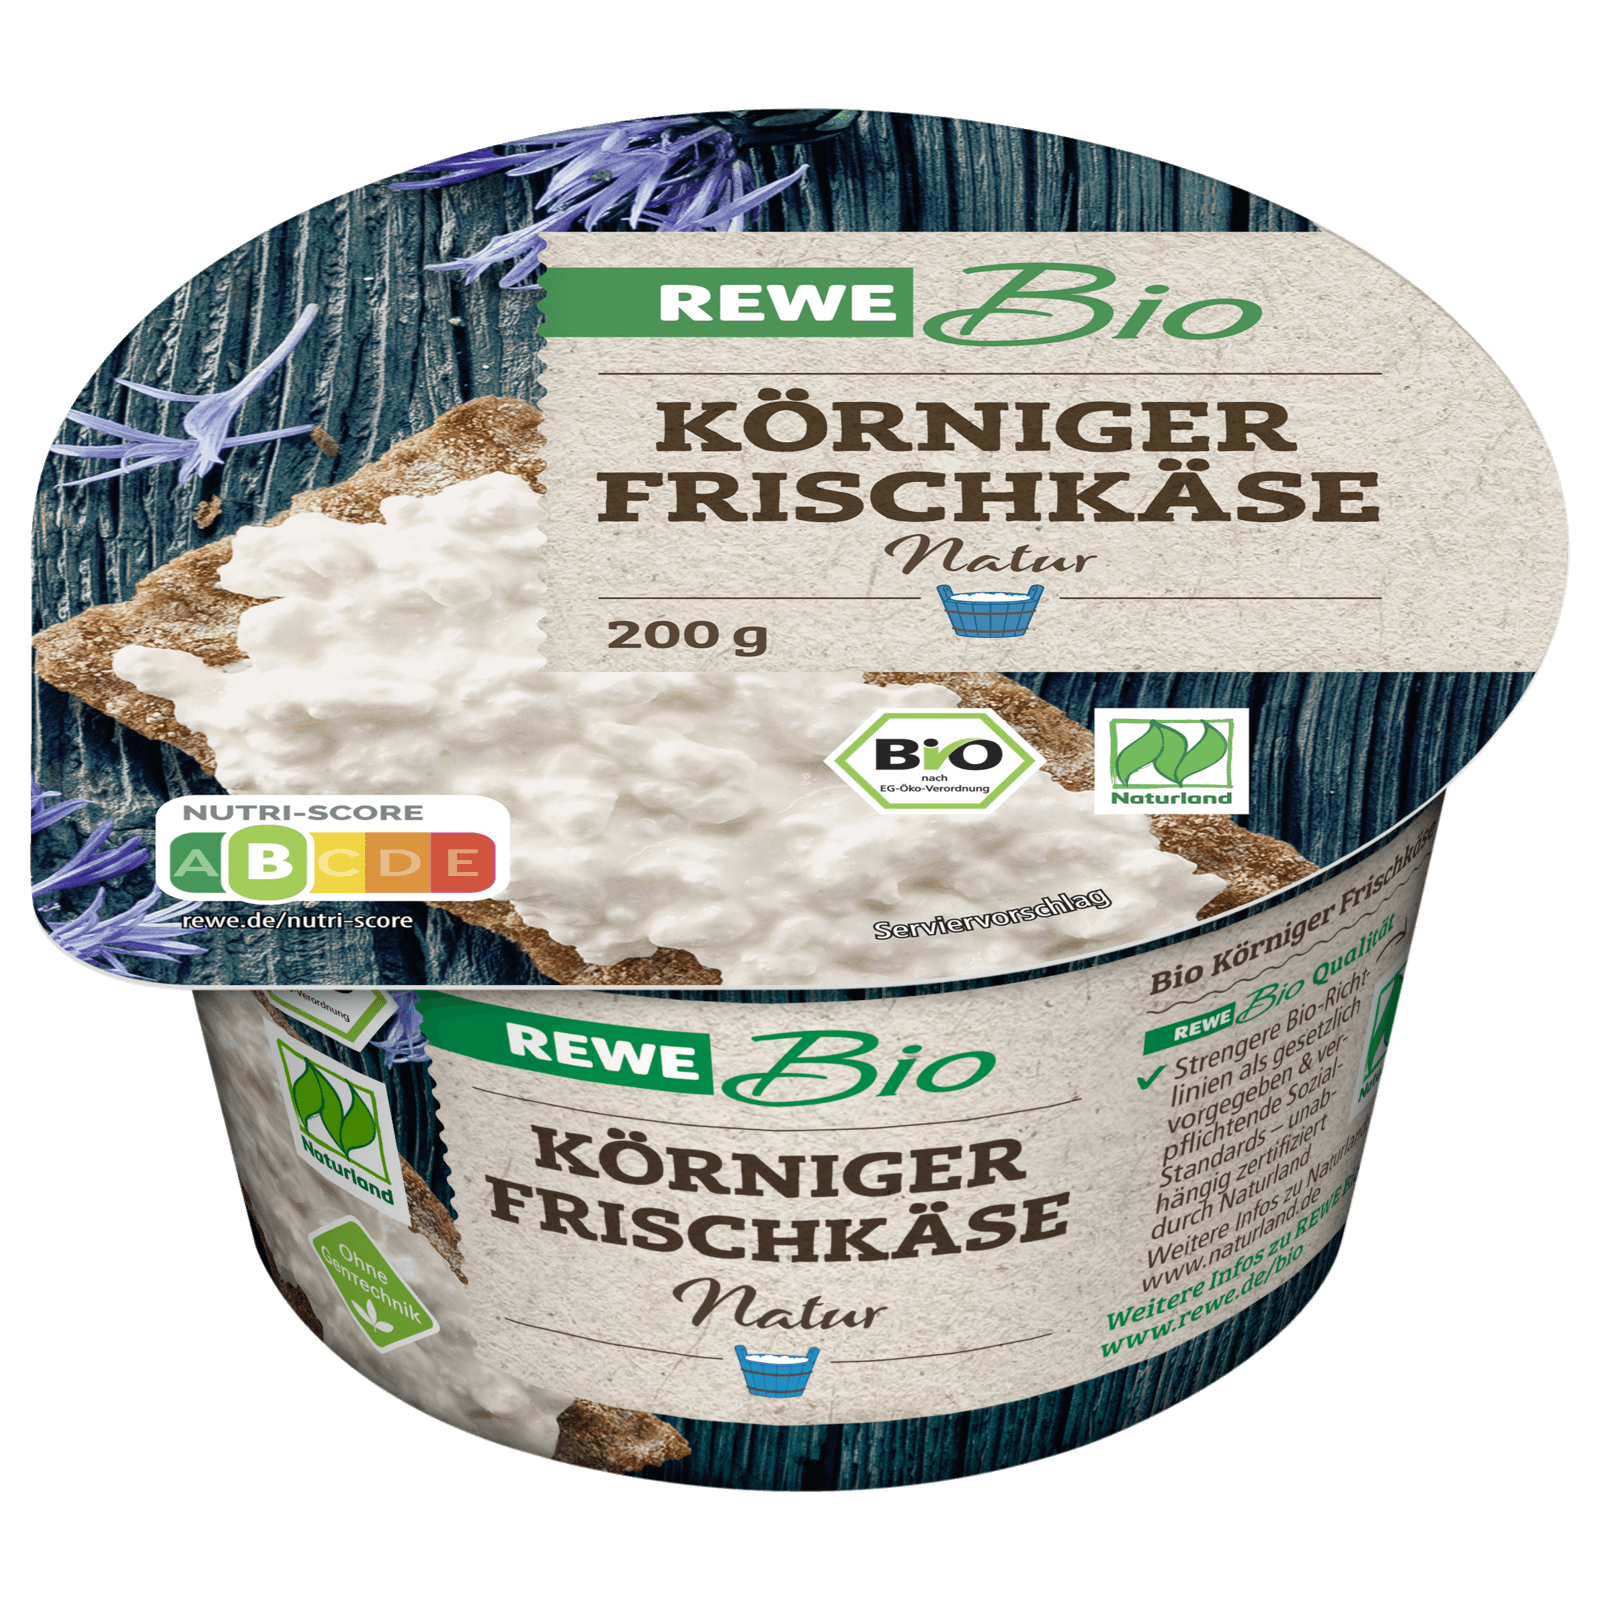 REWE Bio Körniger Frischkäse 200g bei REWE online bestellen